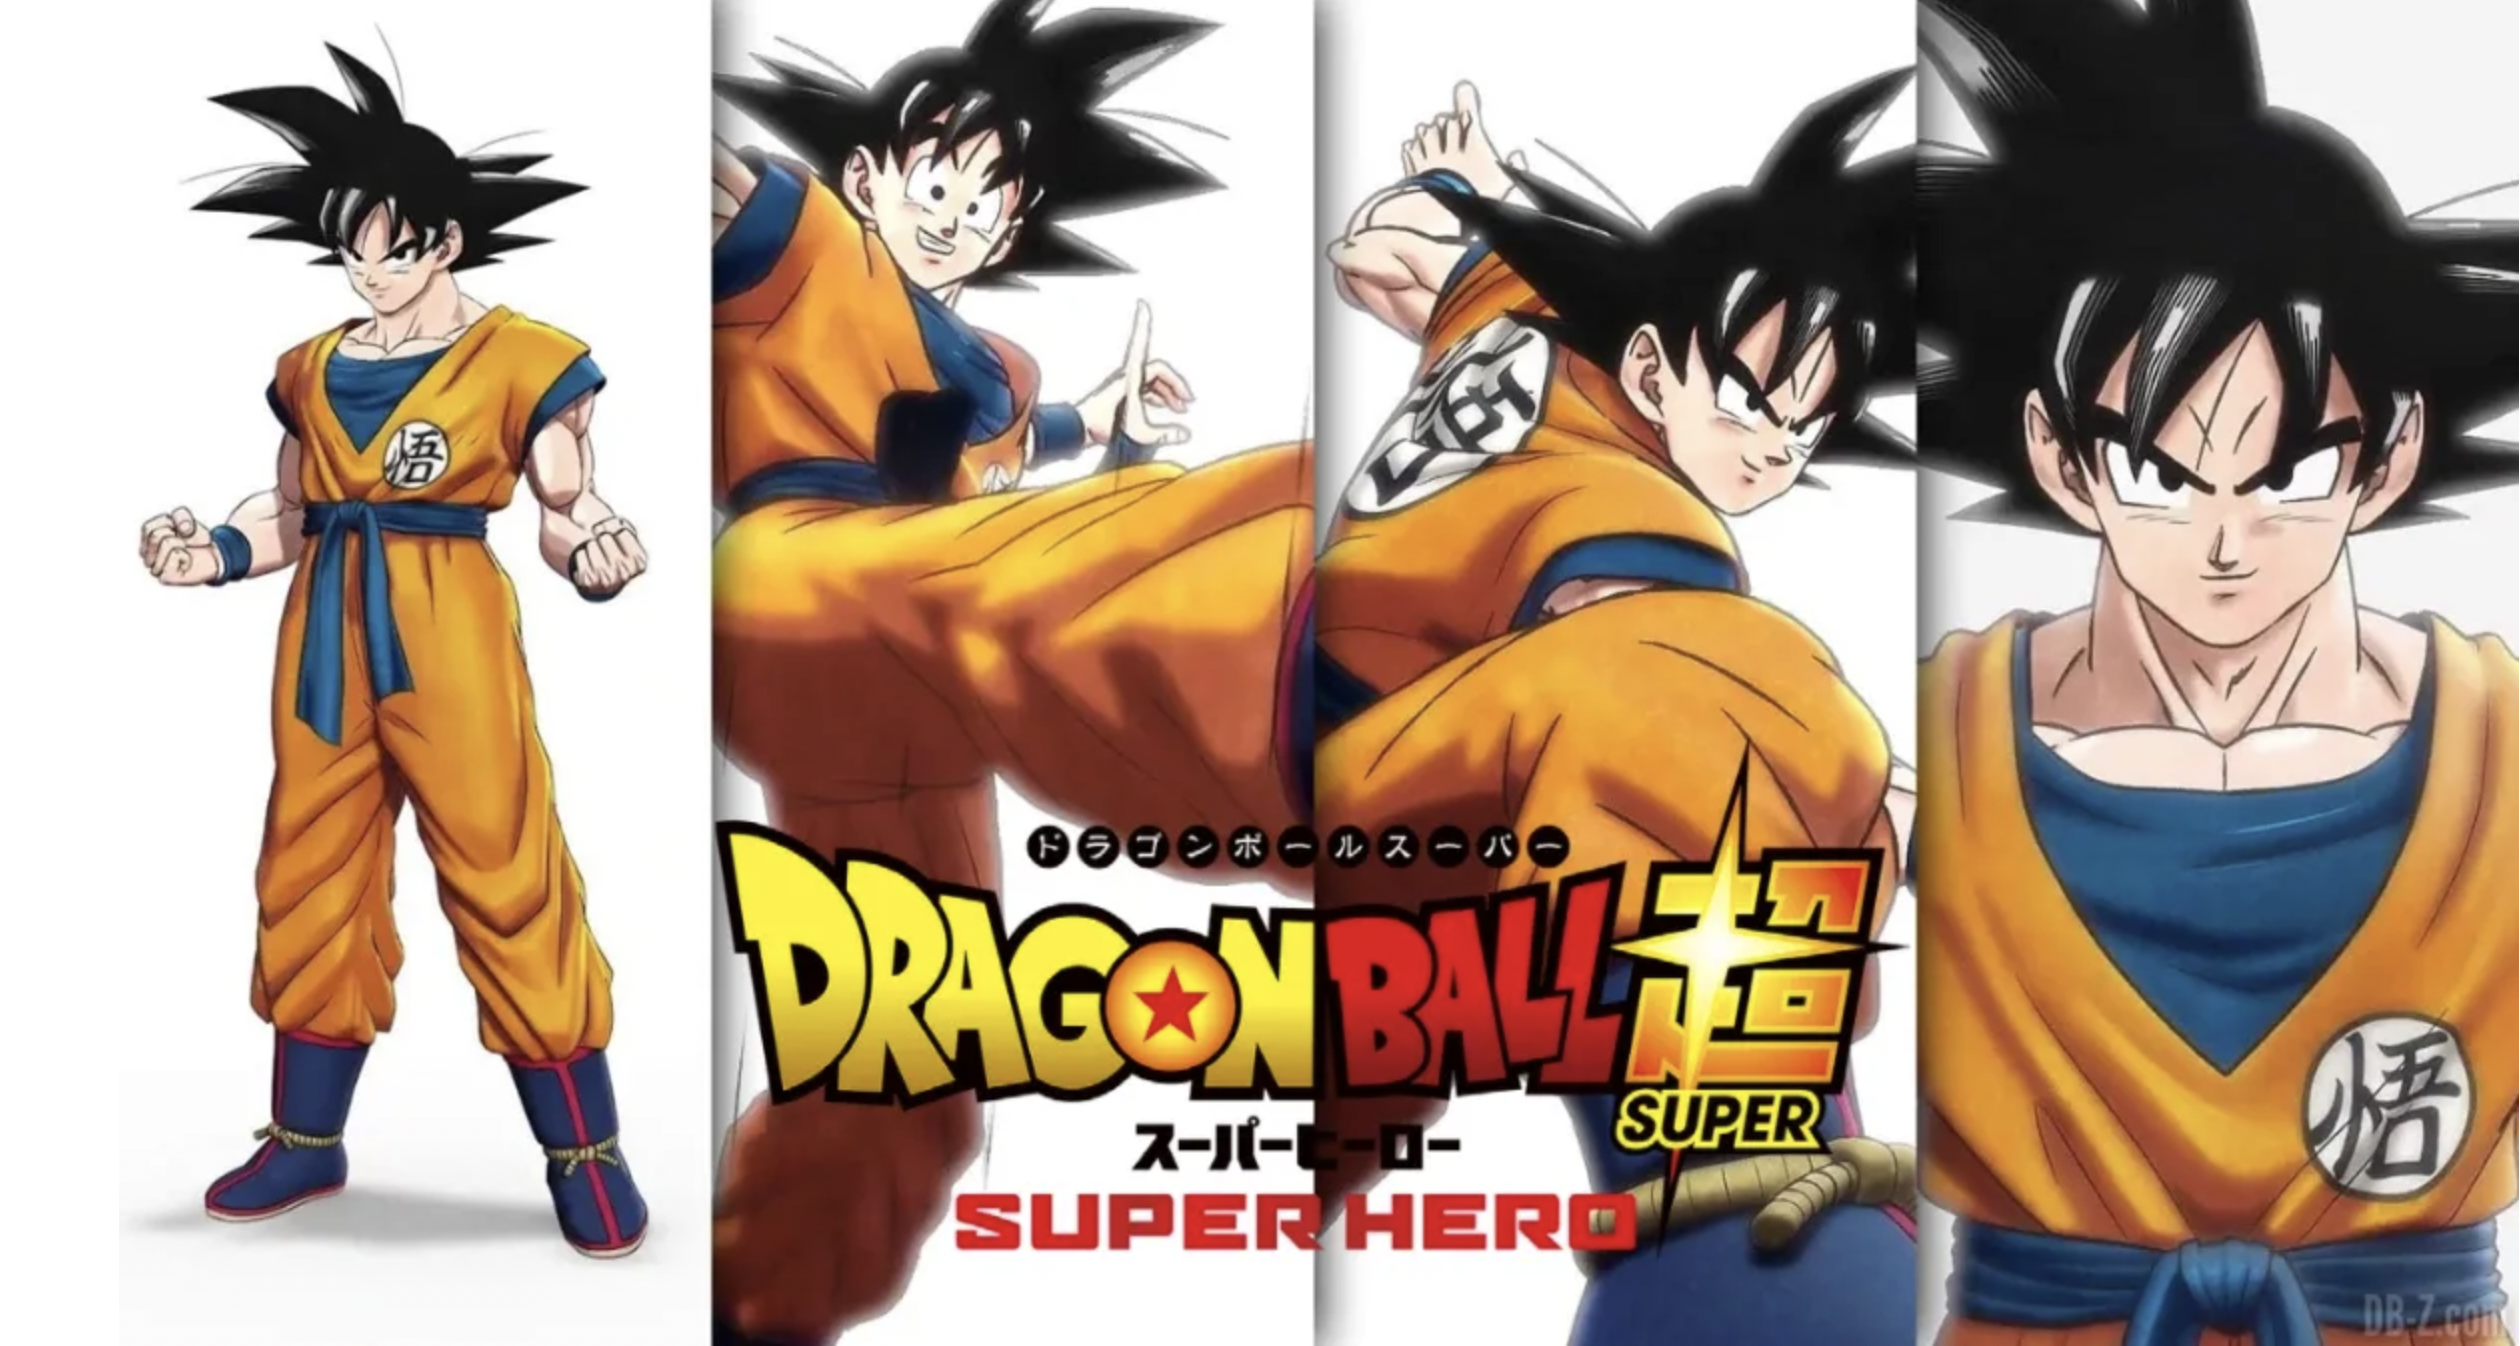 Nova animação de Dragon Ball pode estar em produção na Toei